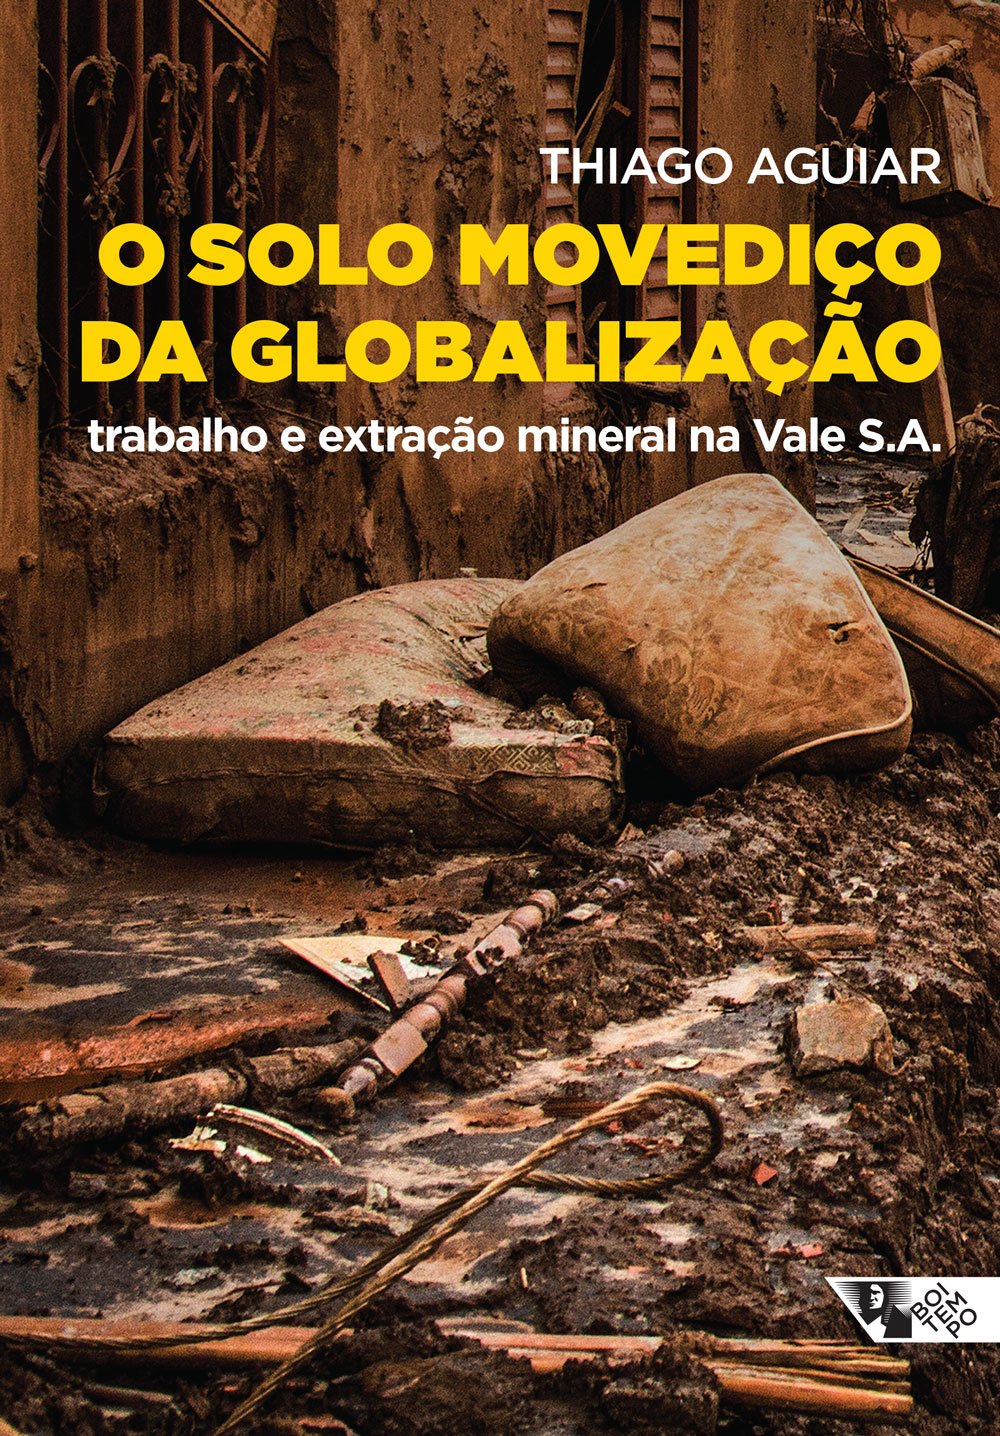 O solo movediço da globalização. Trabalho e extração mineral na Vale S.A., livro de Thiago Aguiar